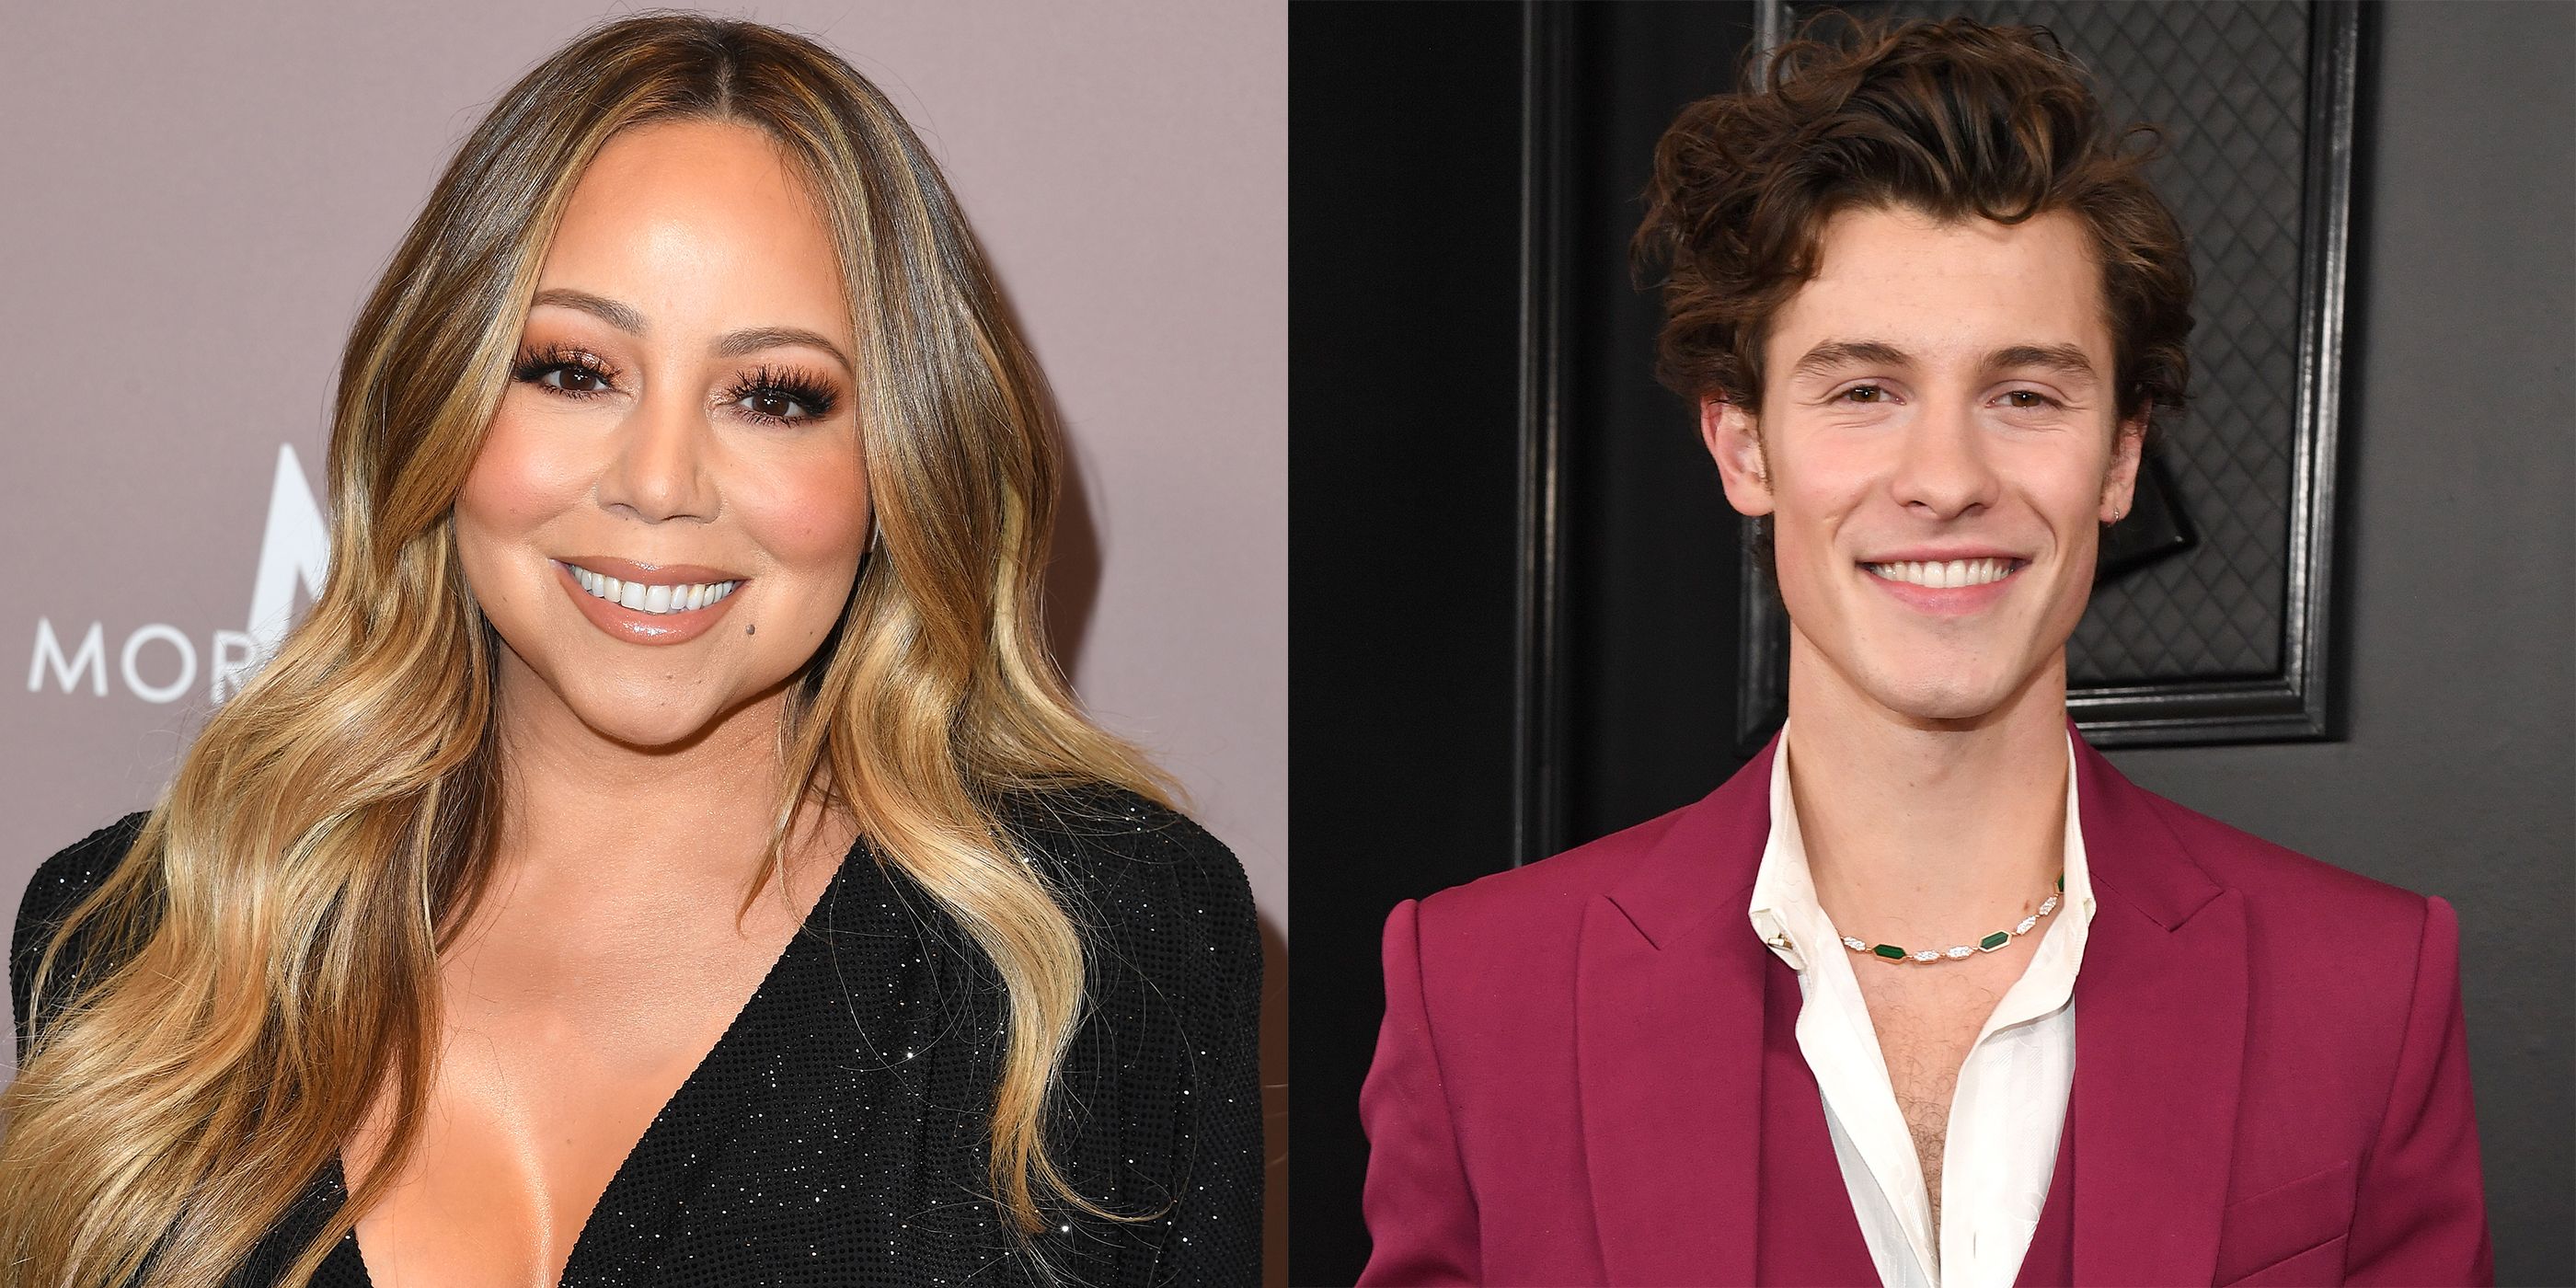 Mariah Carey acaba de recrear el icónico post de Shawn Mendes en Instagram sobre ella